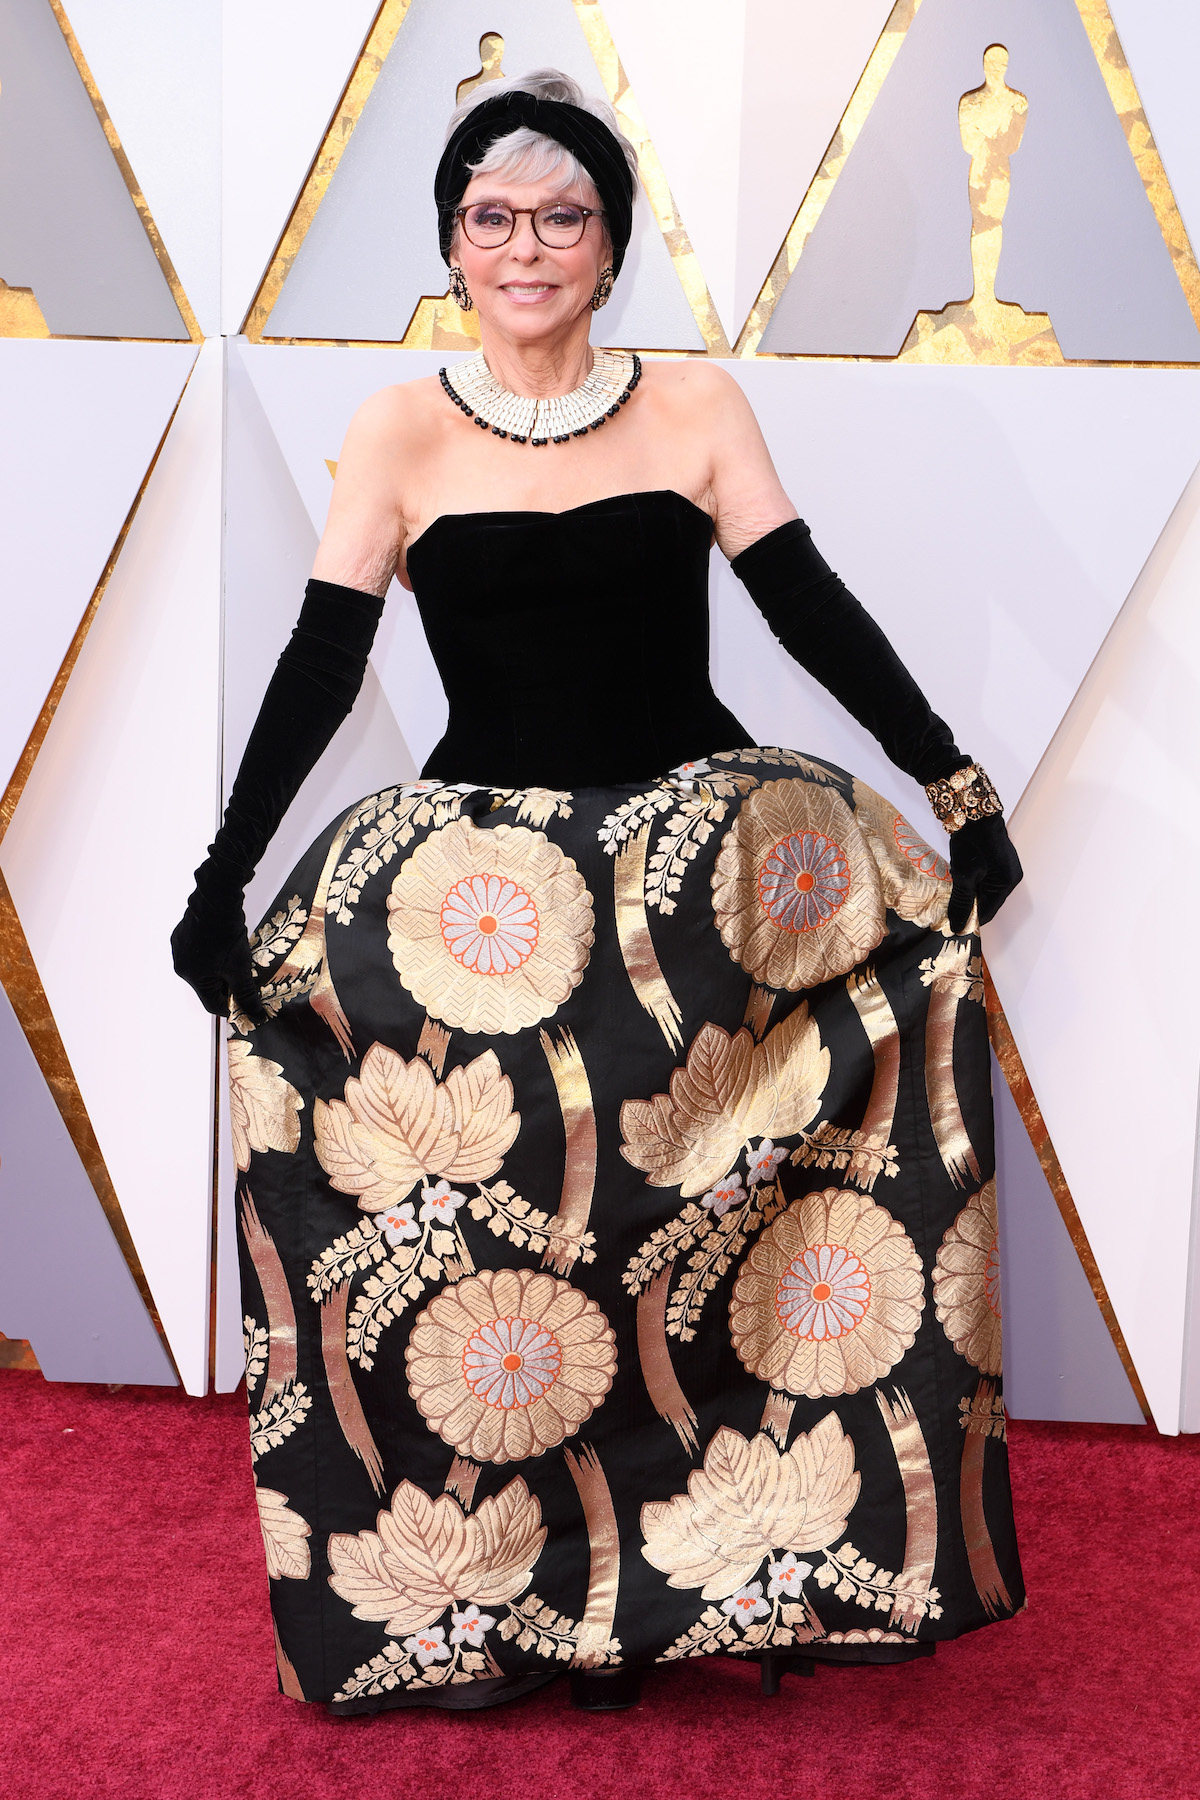 Actress Rita Moreno at the 2018 Oscars